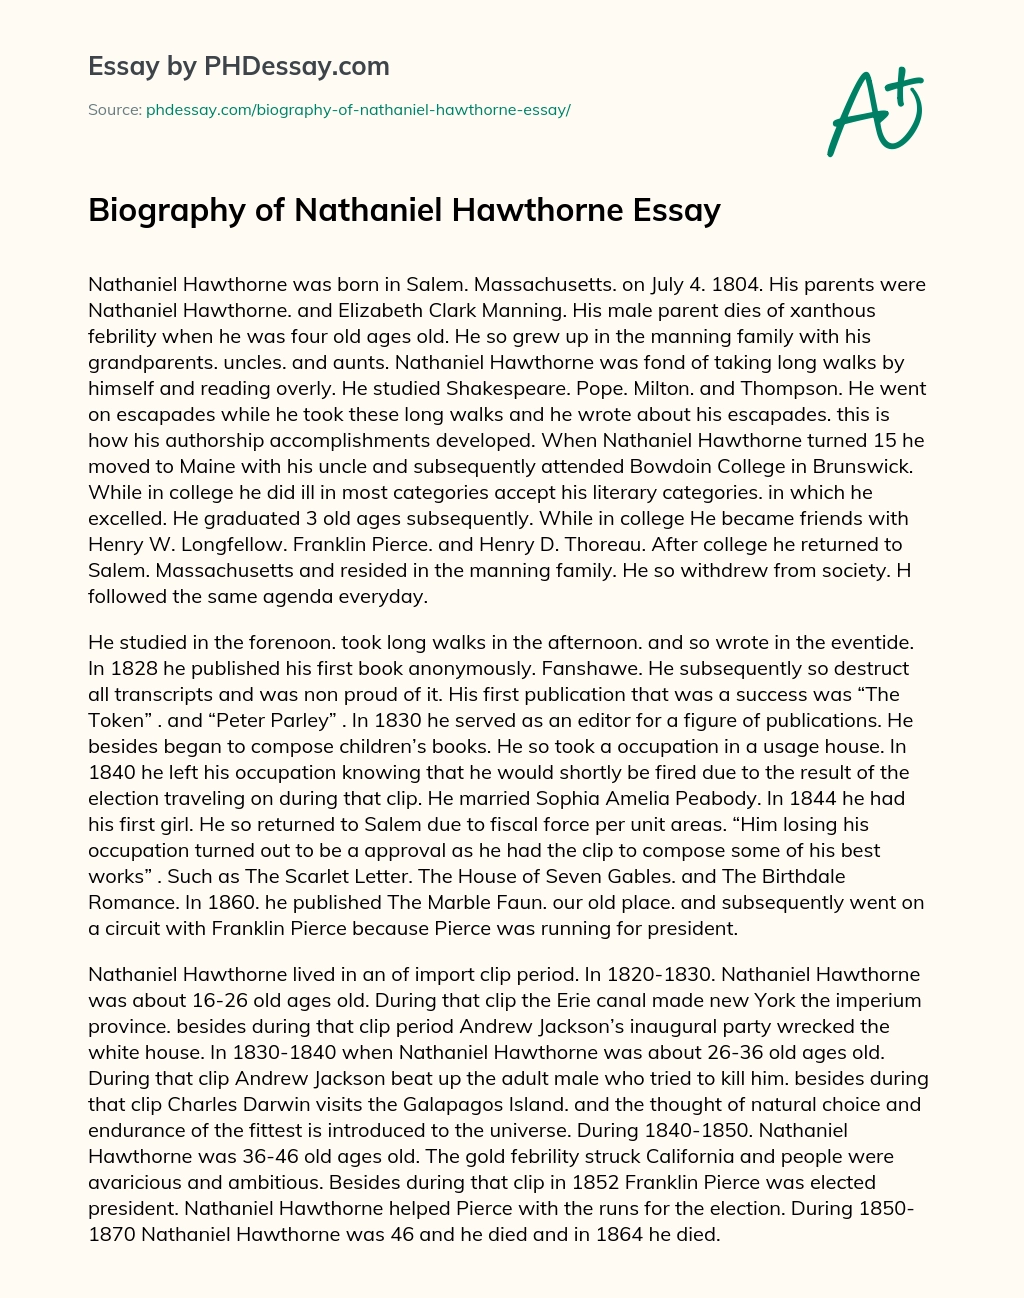 Biography of Nathaniel Hawthorne Essay essay